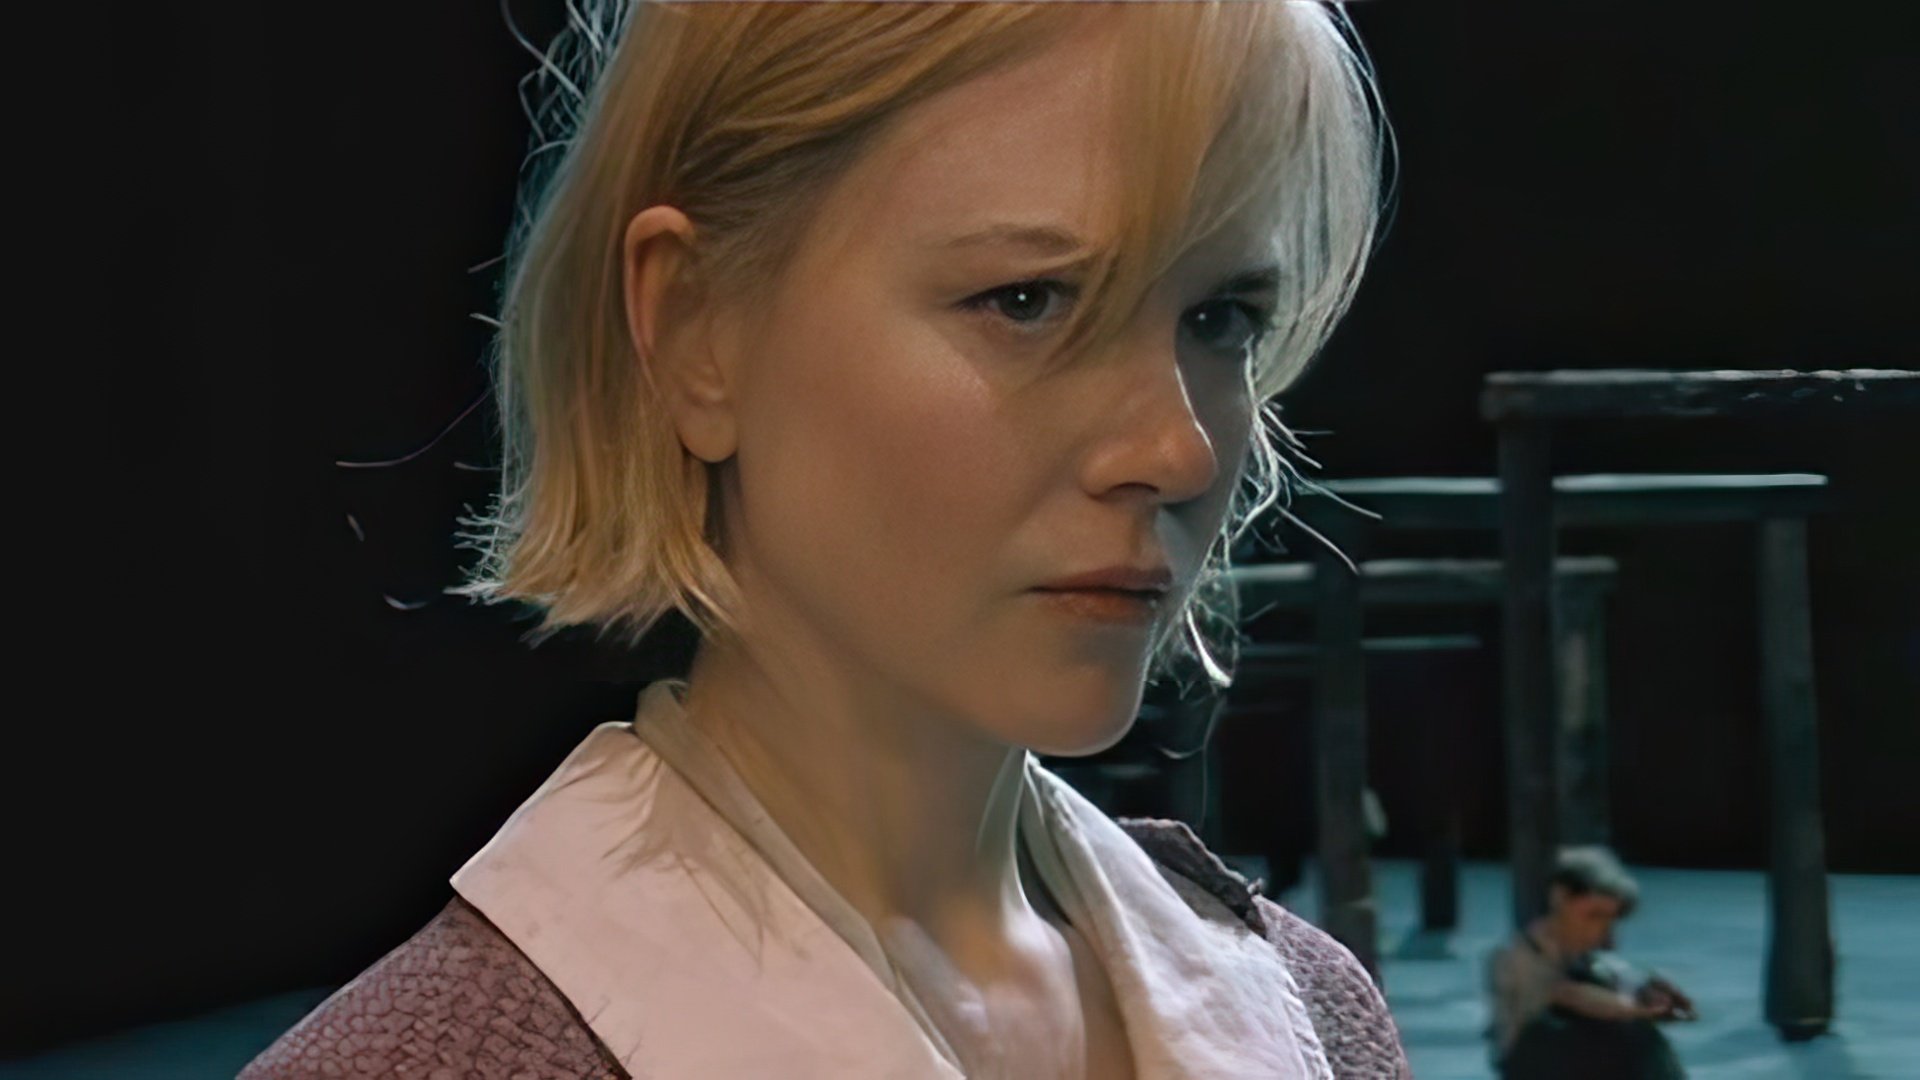 Nicole Kidman in Von Trier’s drama “Dogville”